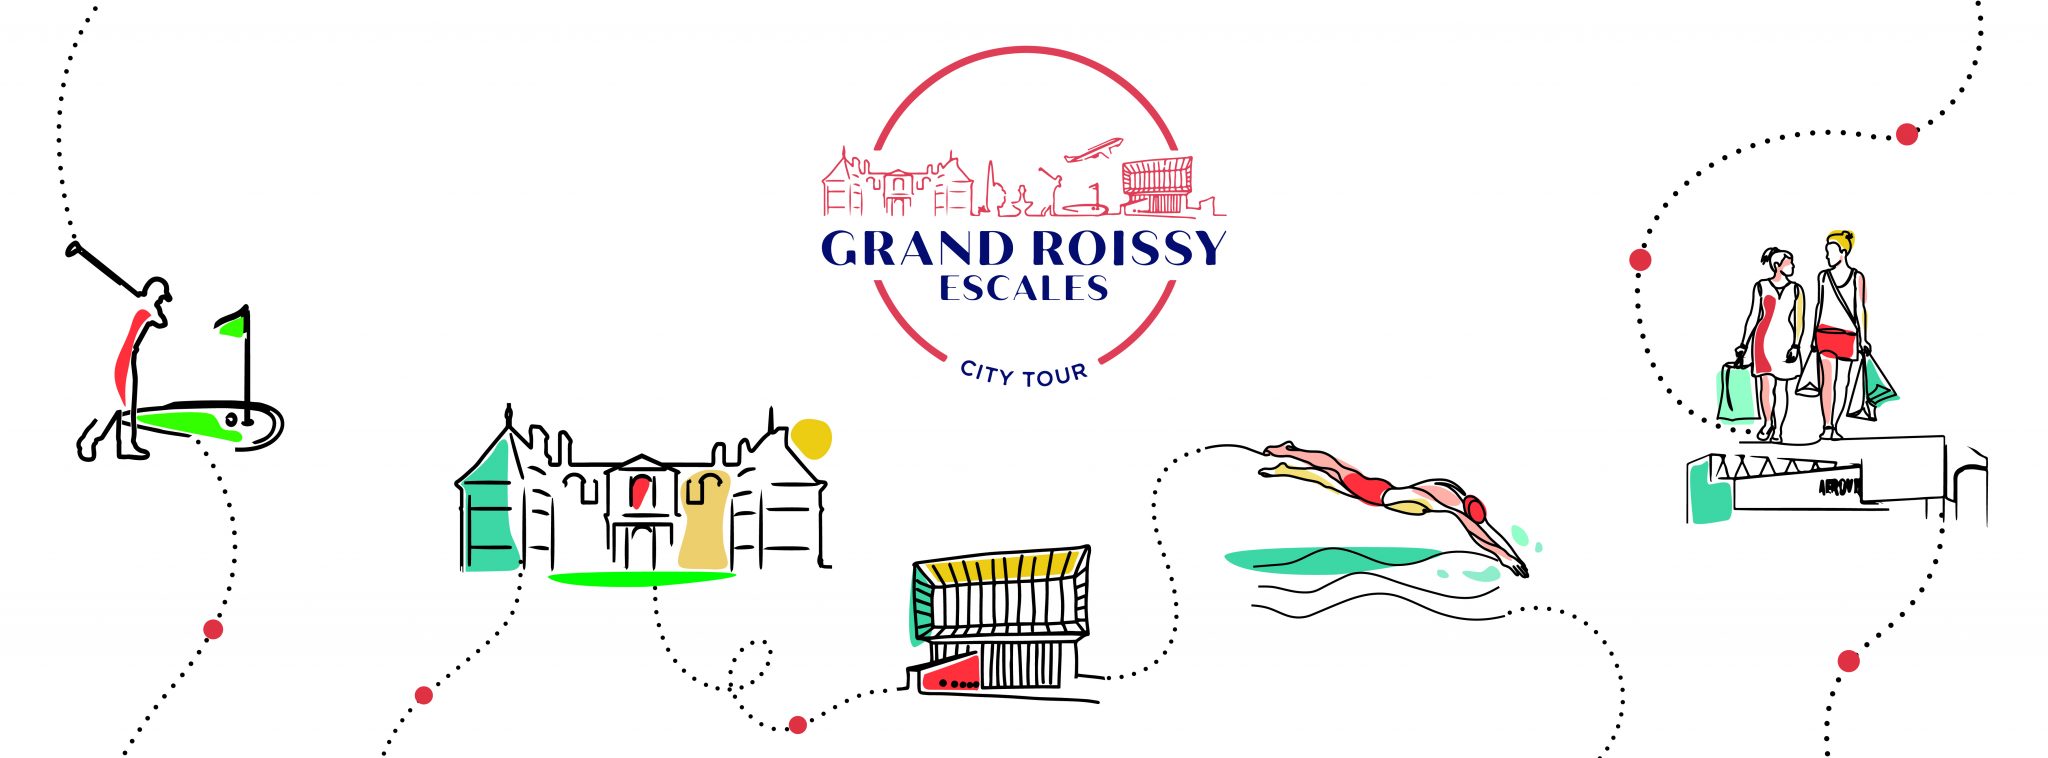 La Oficina de Turismo de Grand Roissy lanza su City Tour